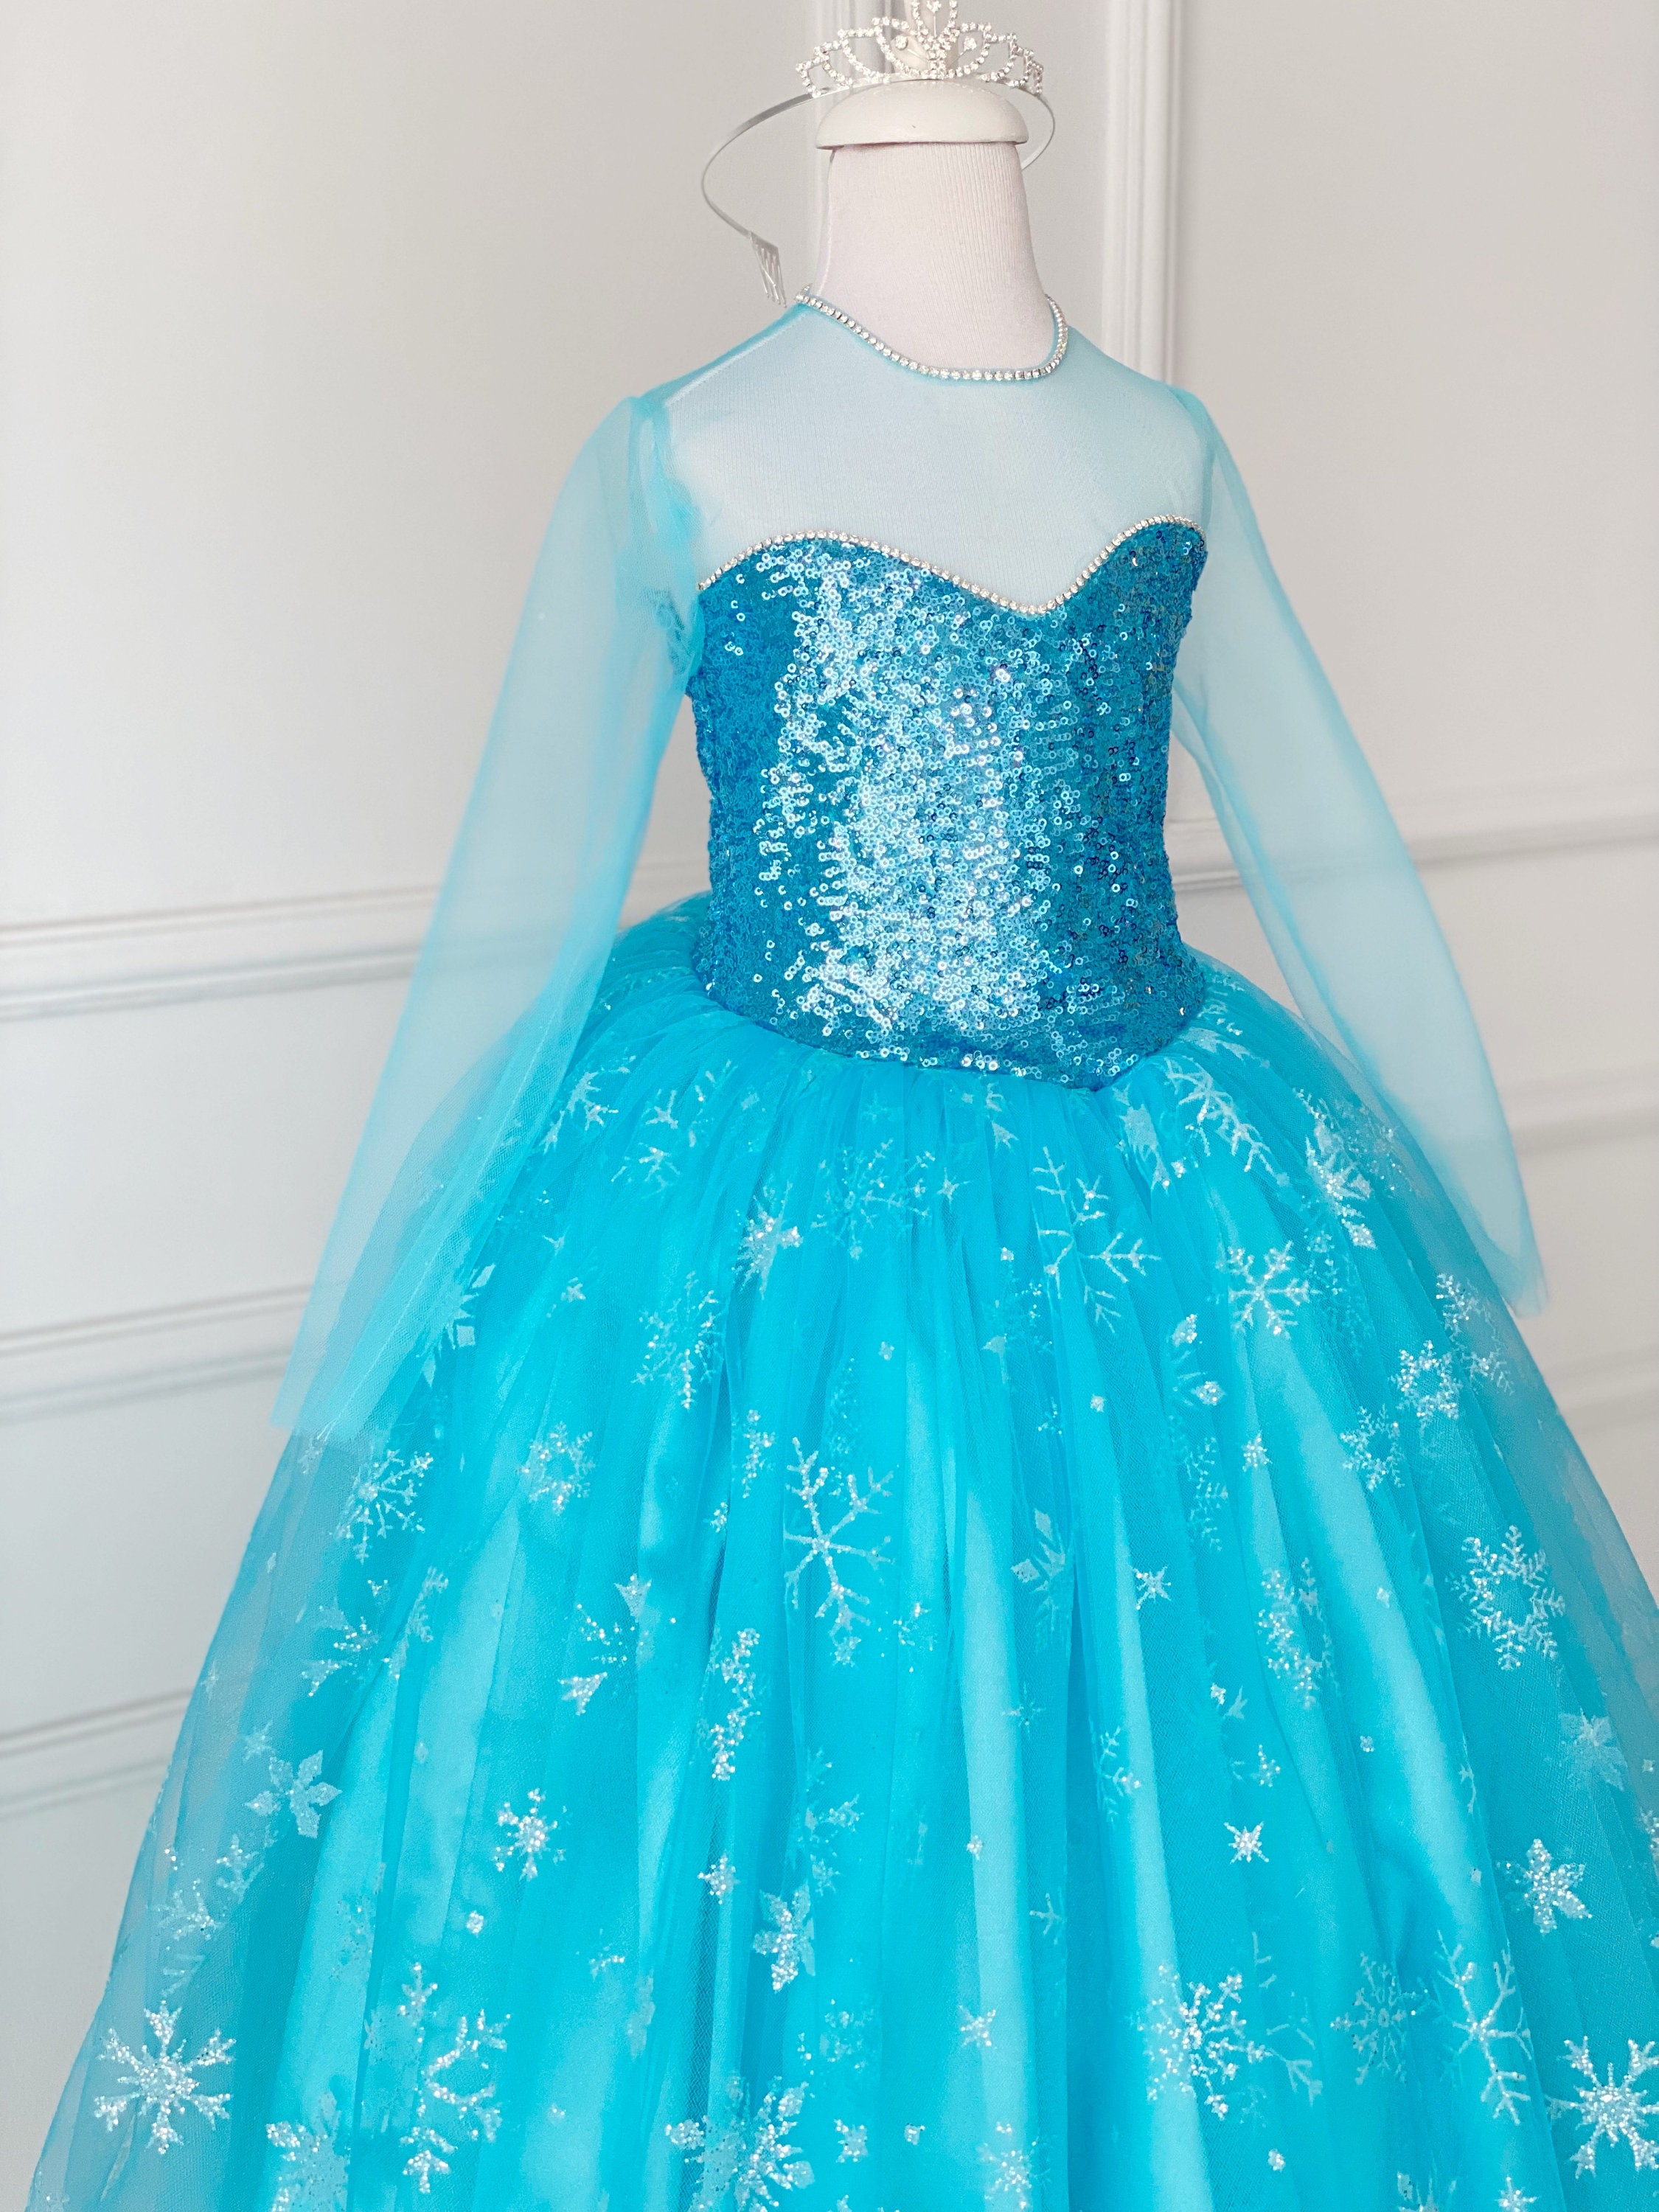 Elsa Inspired Dress Frozen Inspired Girl Dress Frozen - Etsy